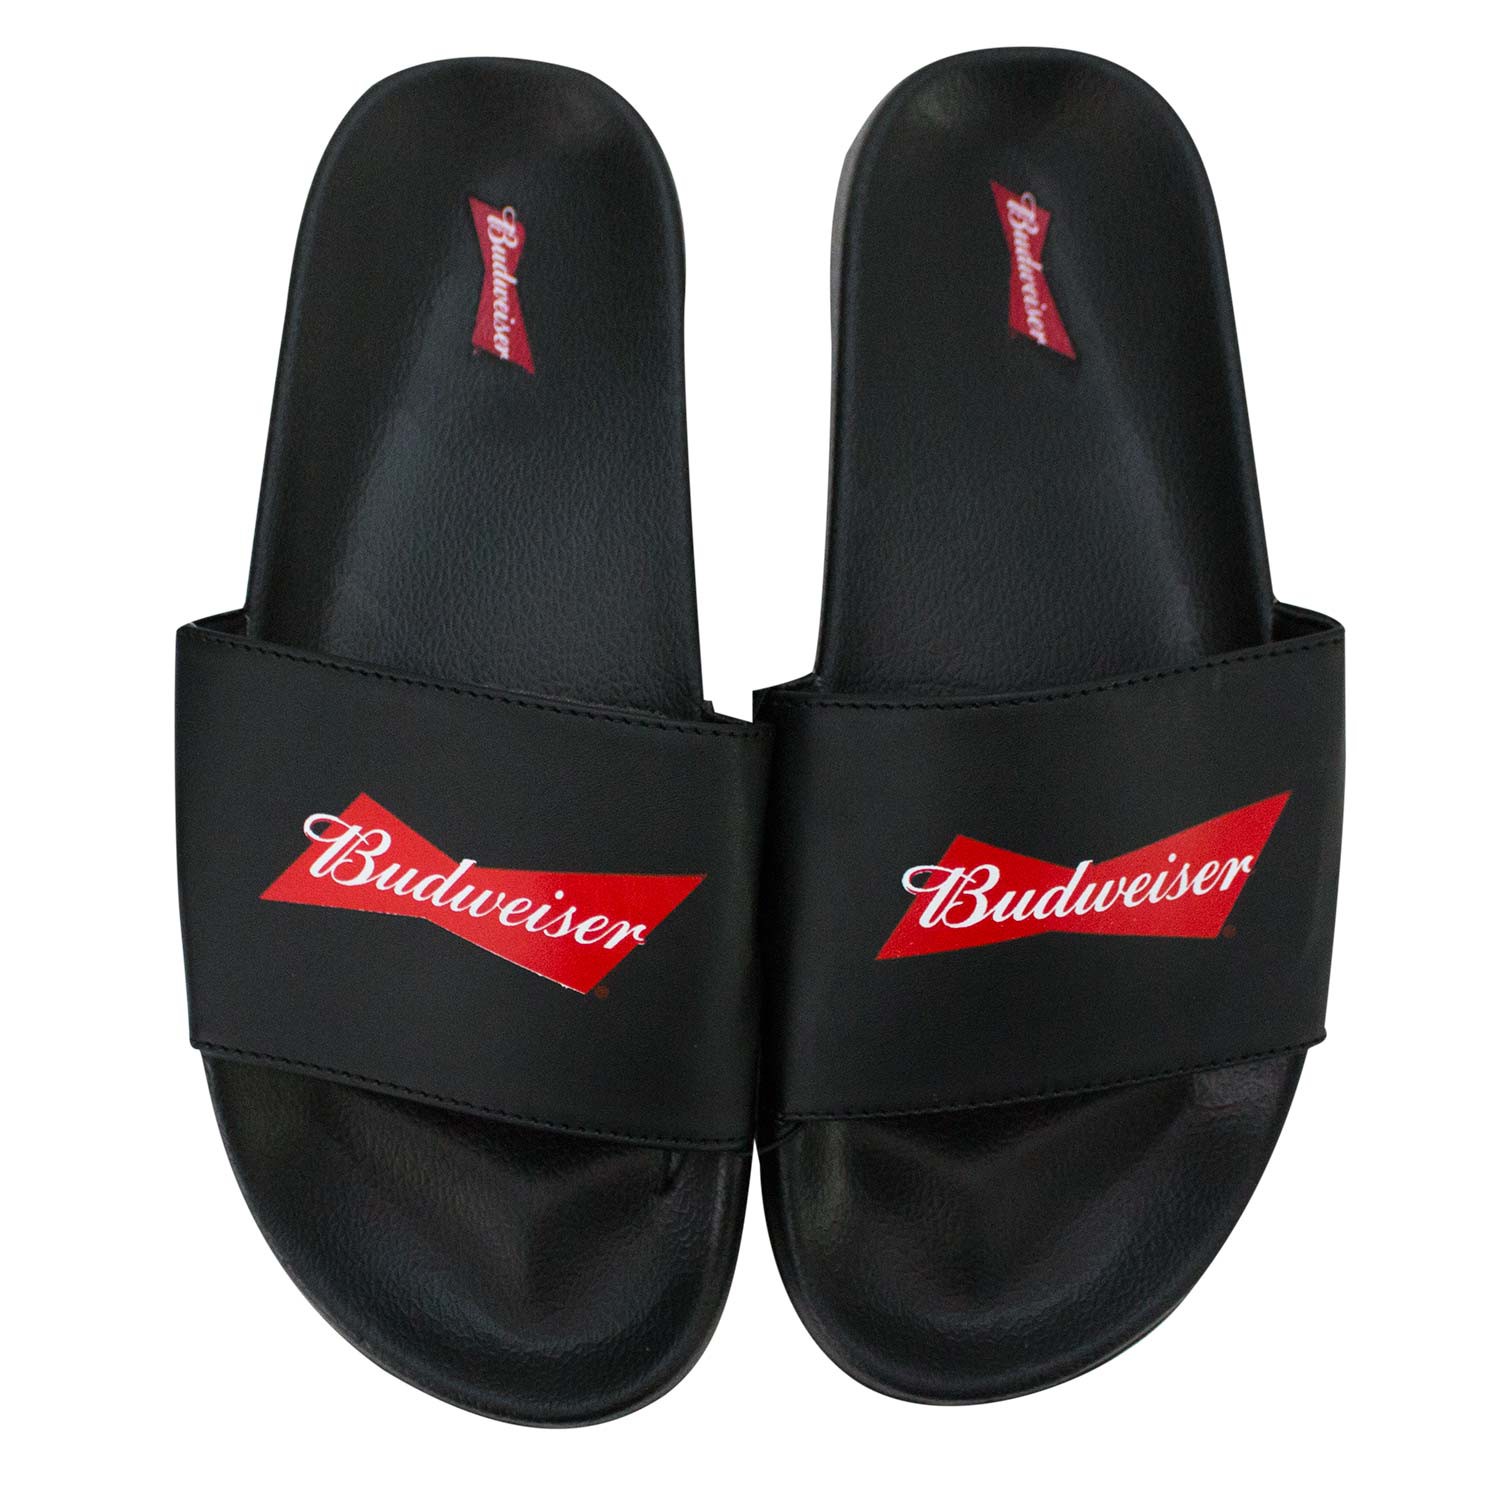 Budweiser Soccer Slides Men's Sandals